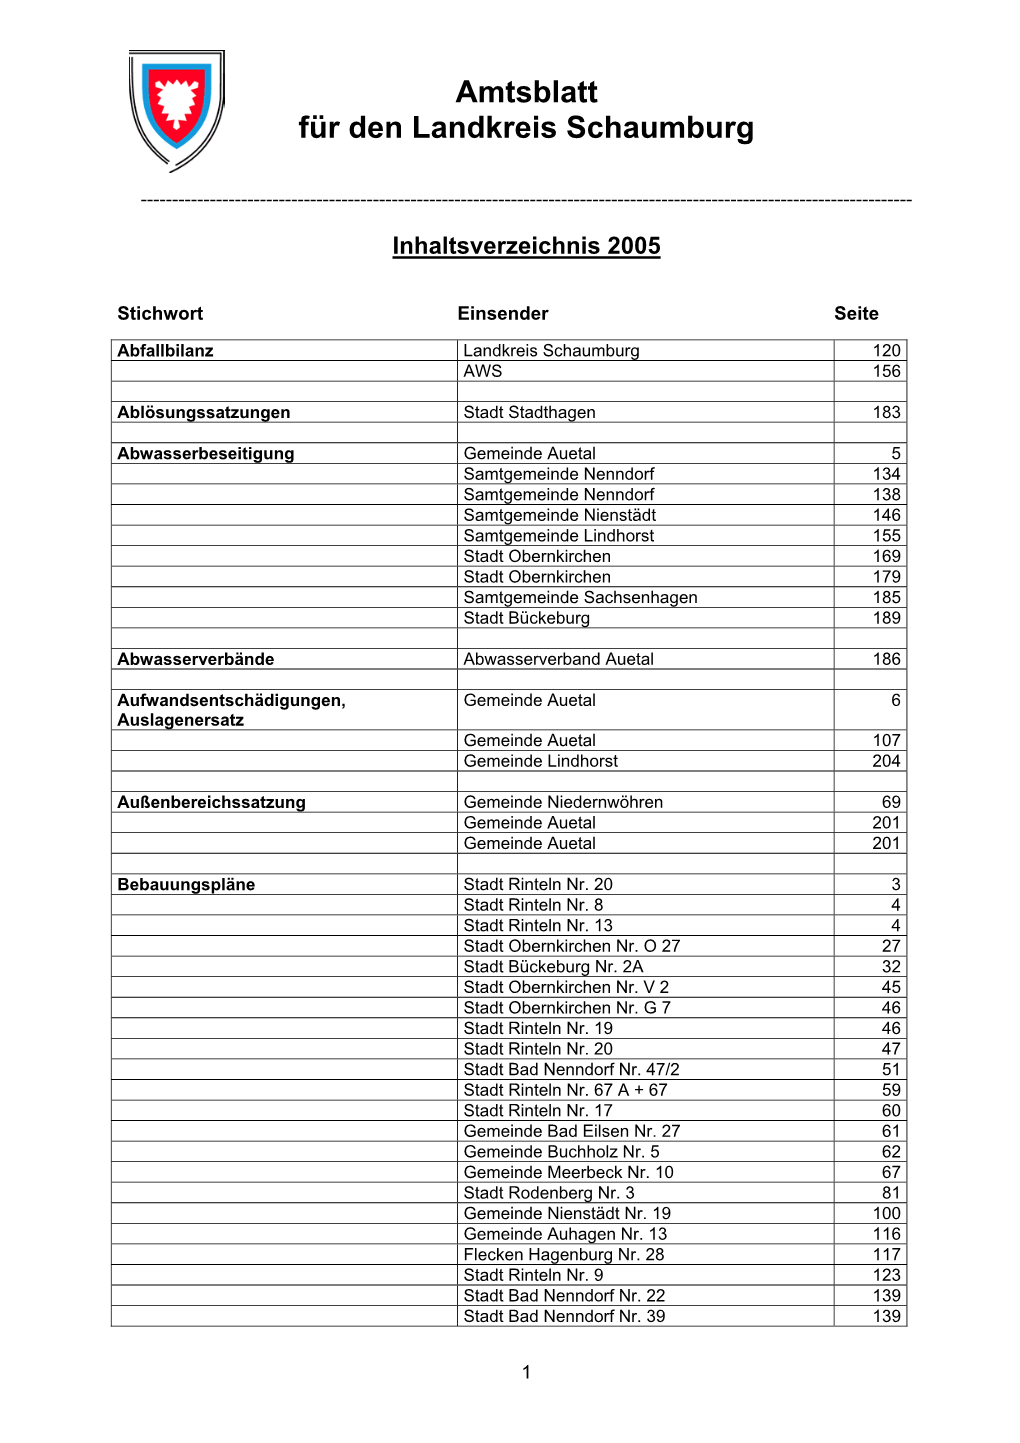 Inhaltsverzeichnis Amtsblatt 2005